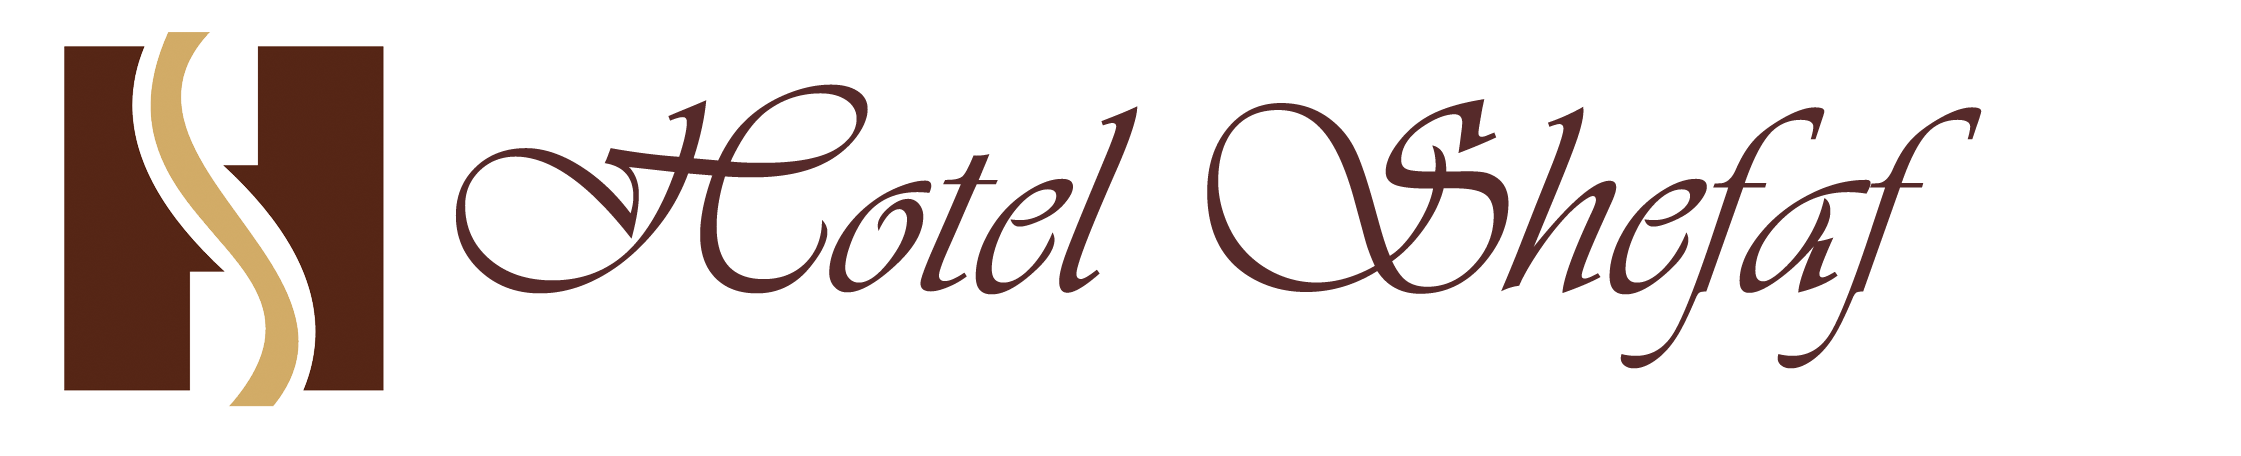 Hotel Shefaf|Hotel|Accomodation